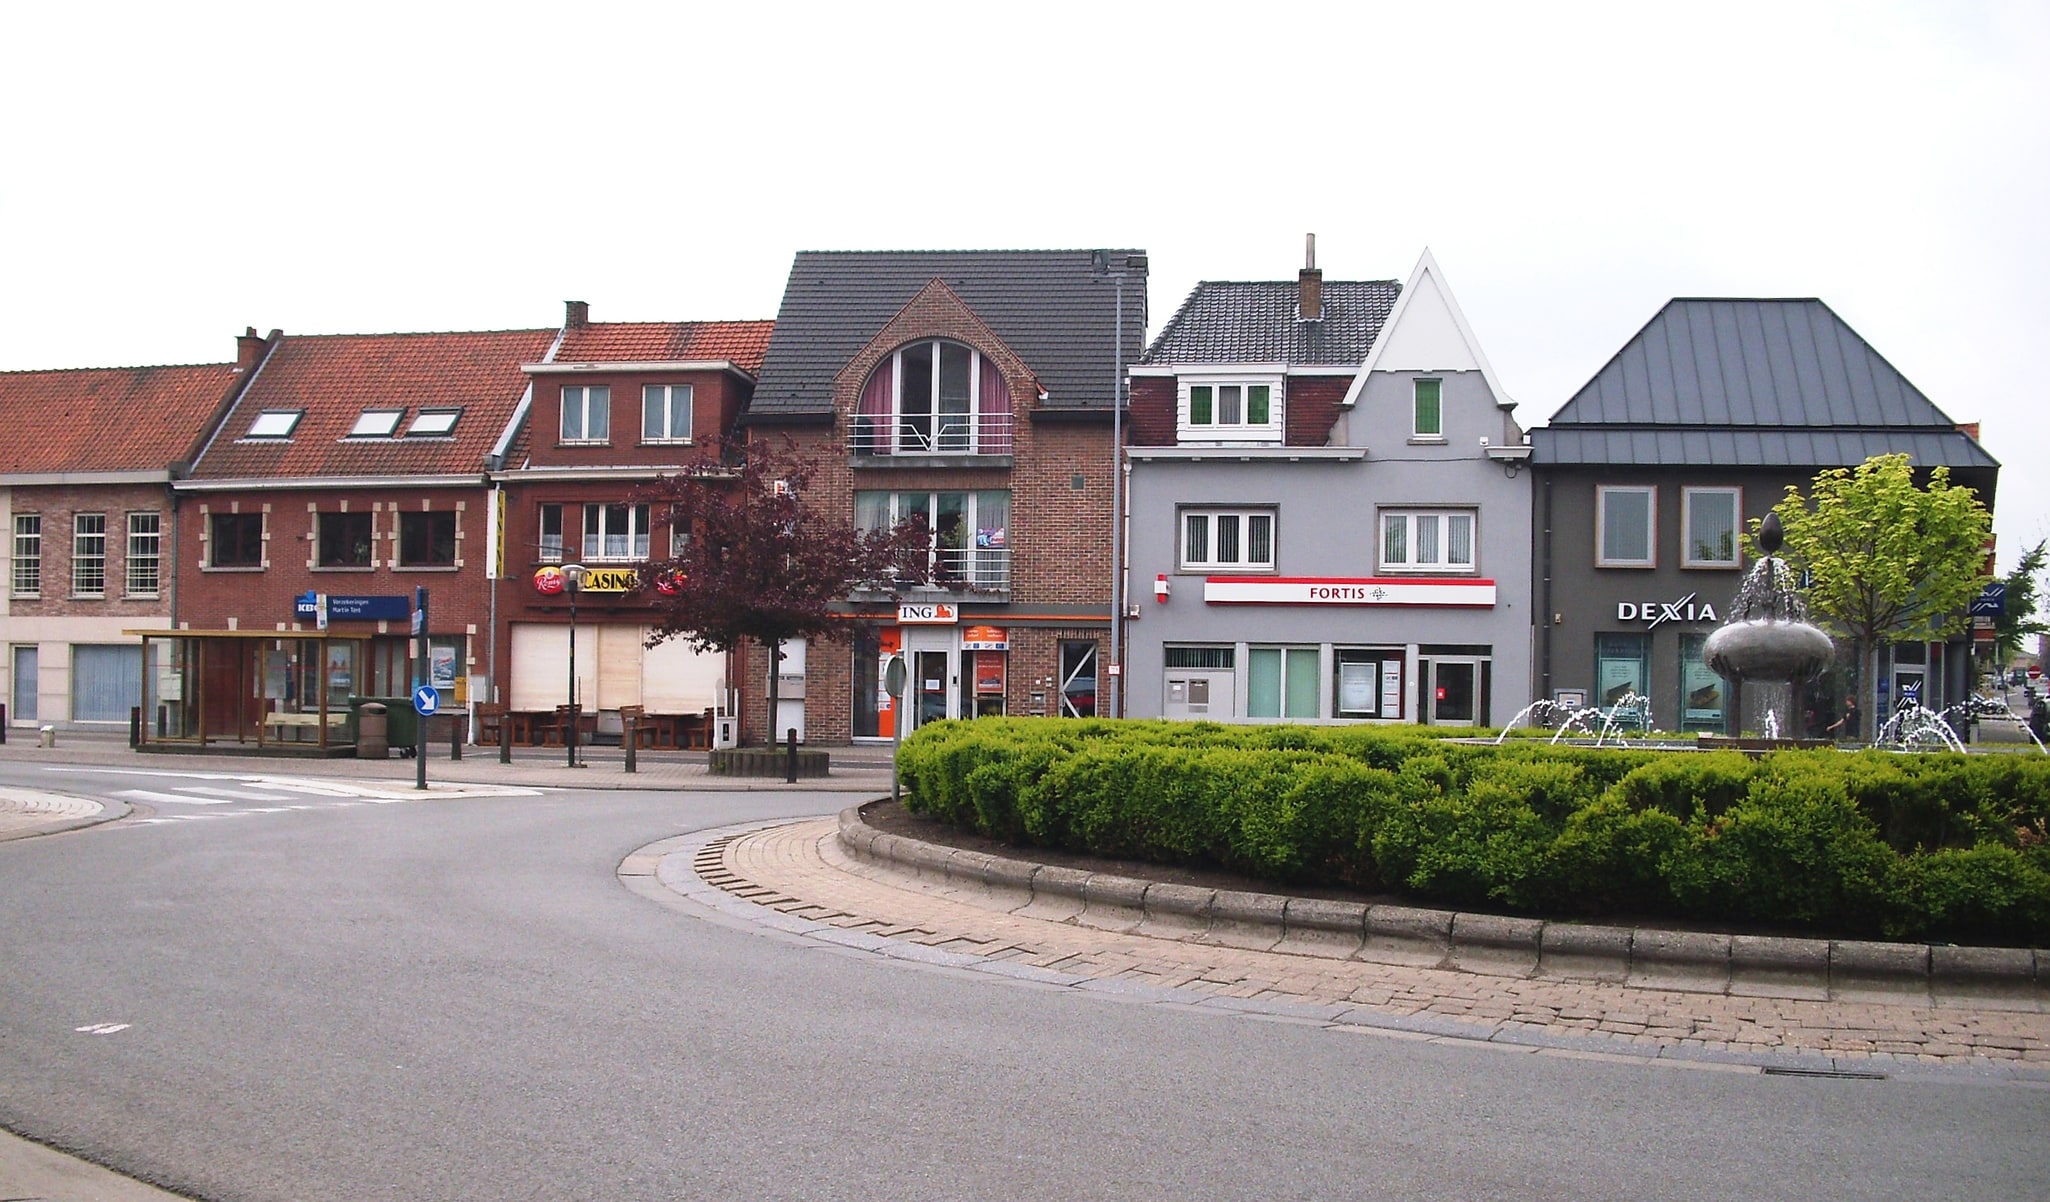 Kruishoutem, Belgium